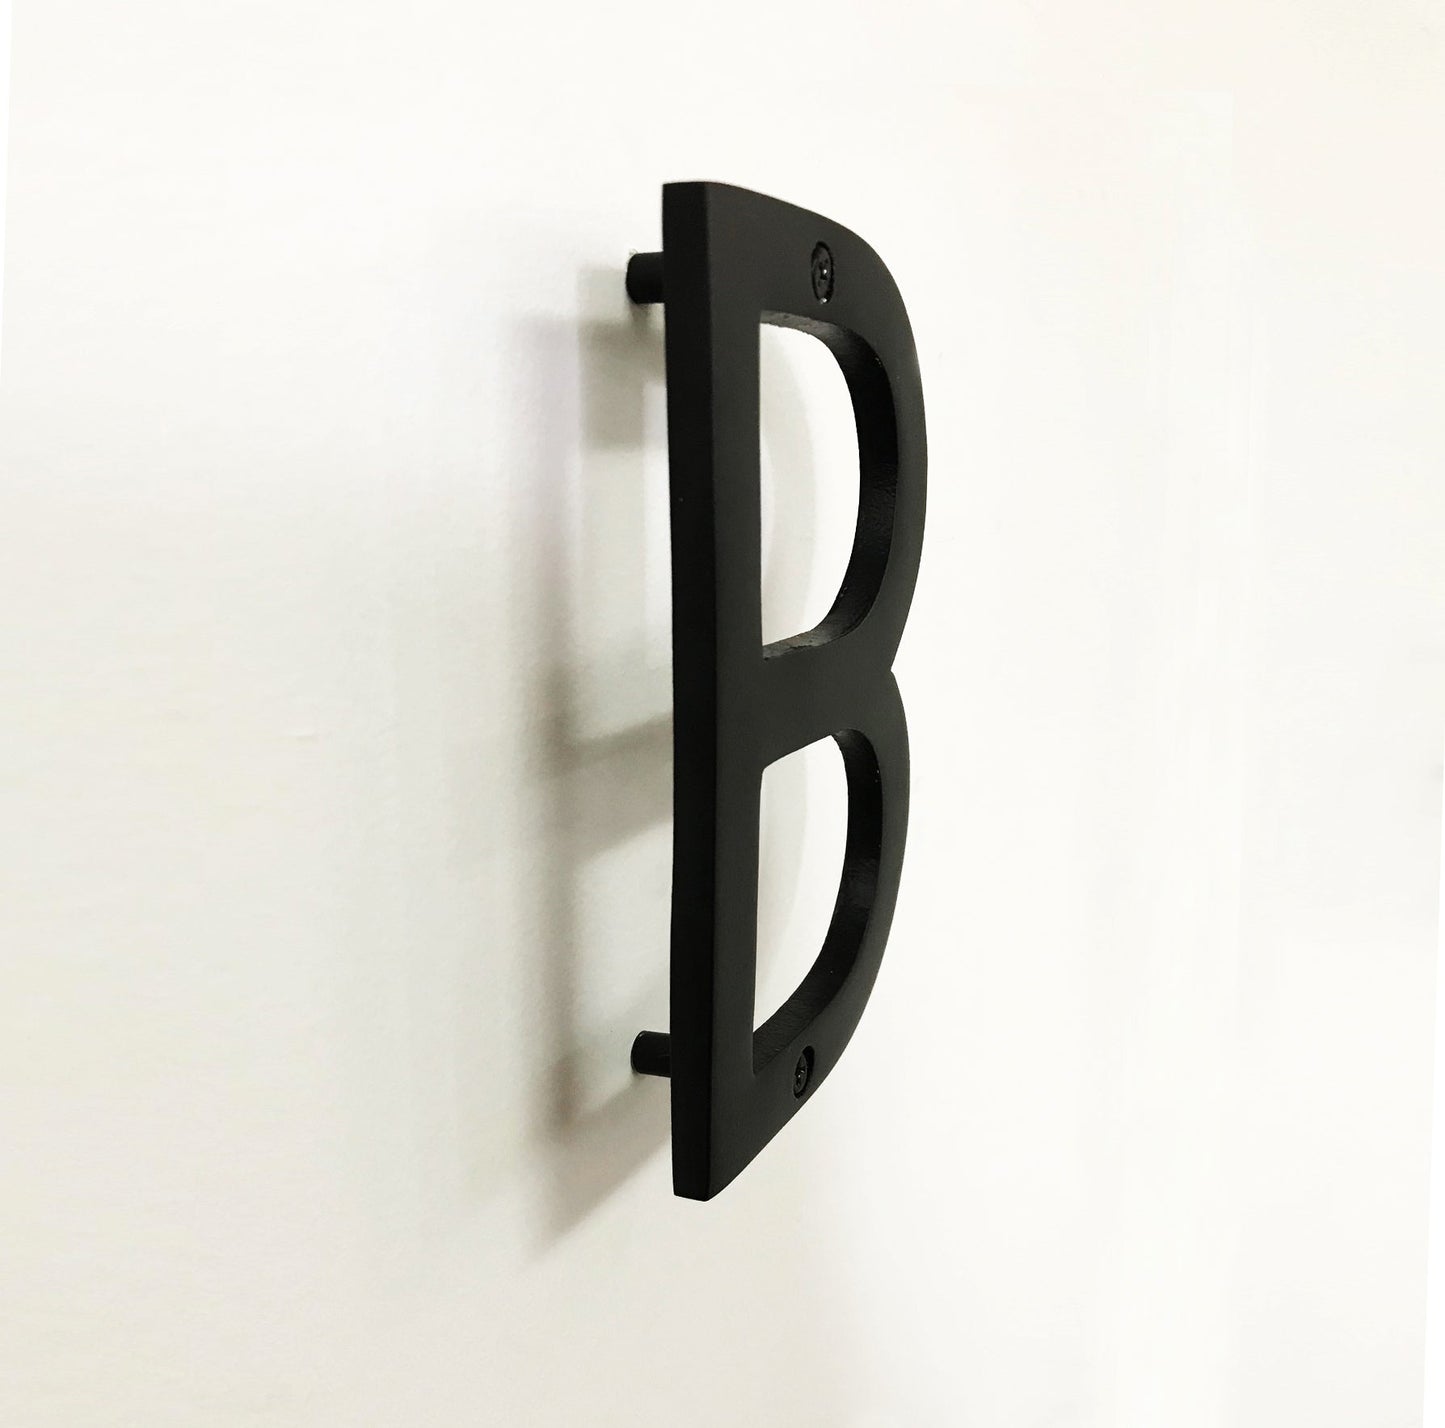 Black aluminum Letter B, 6inch